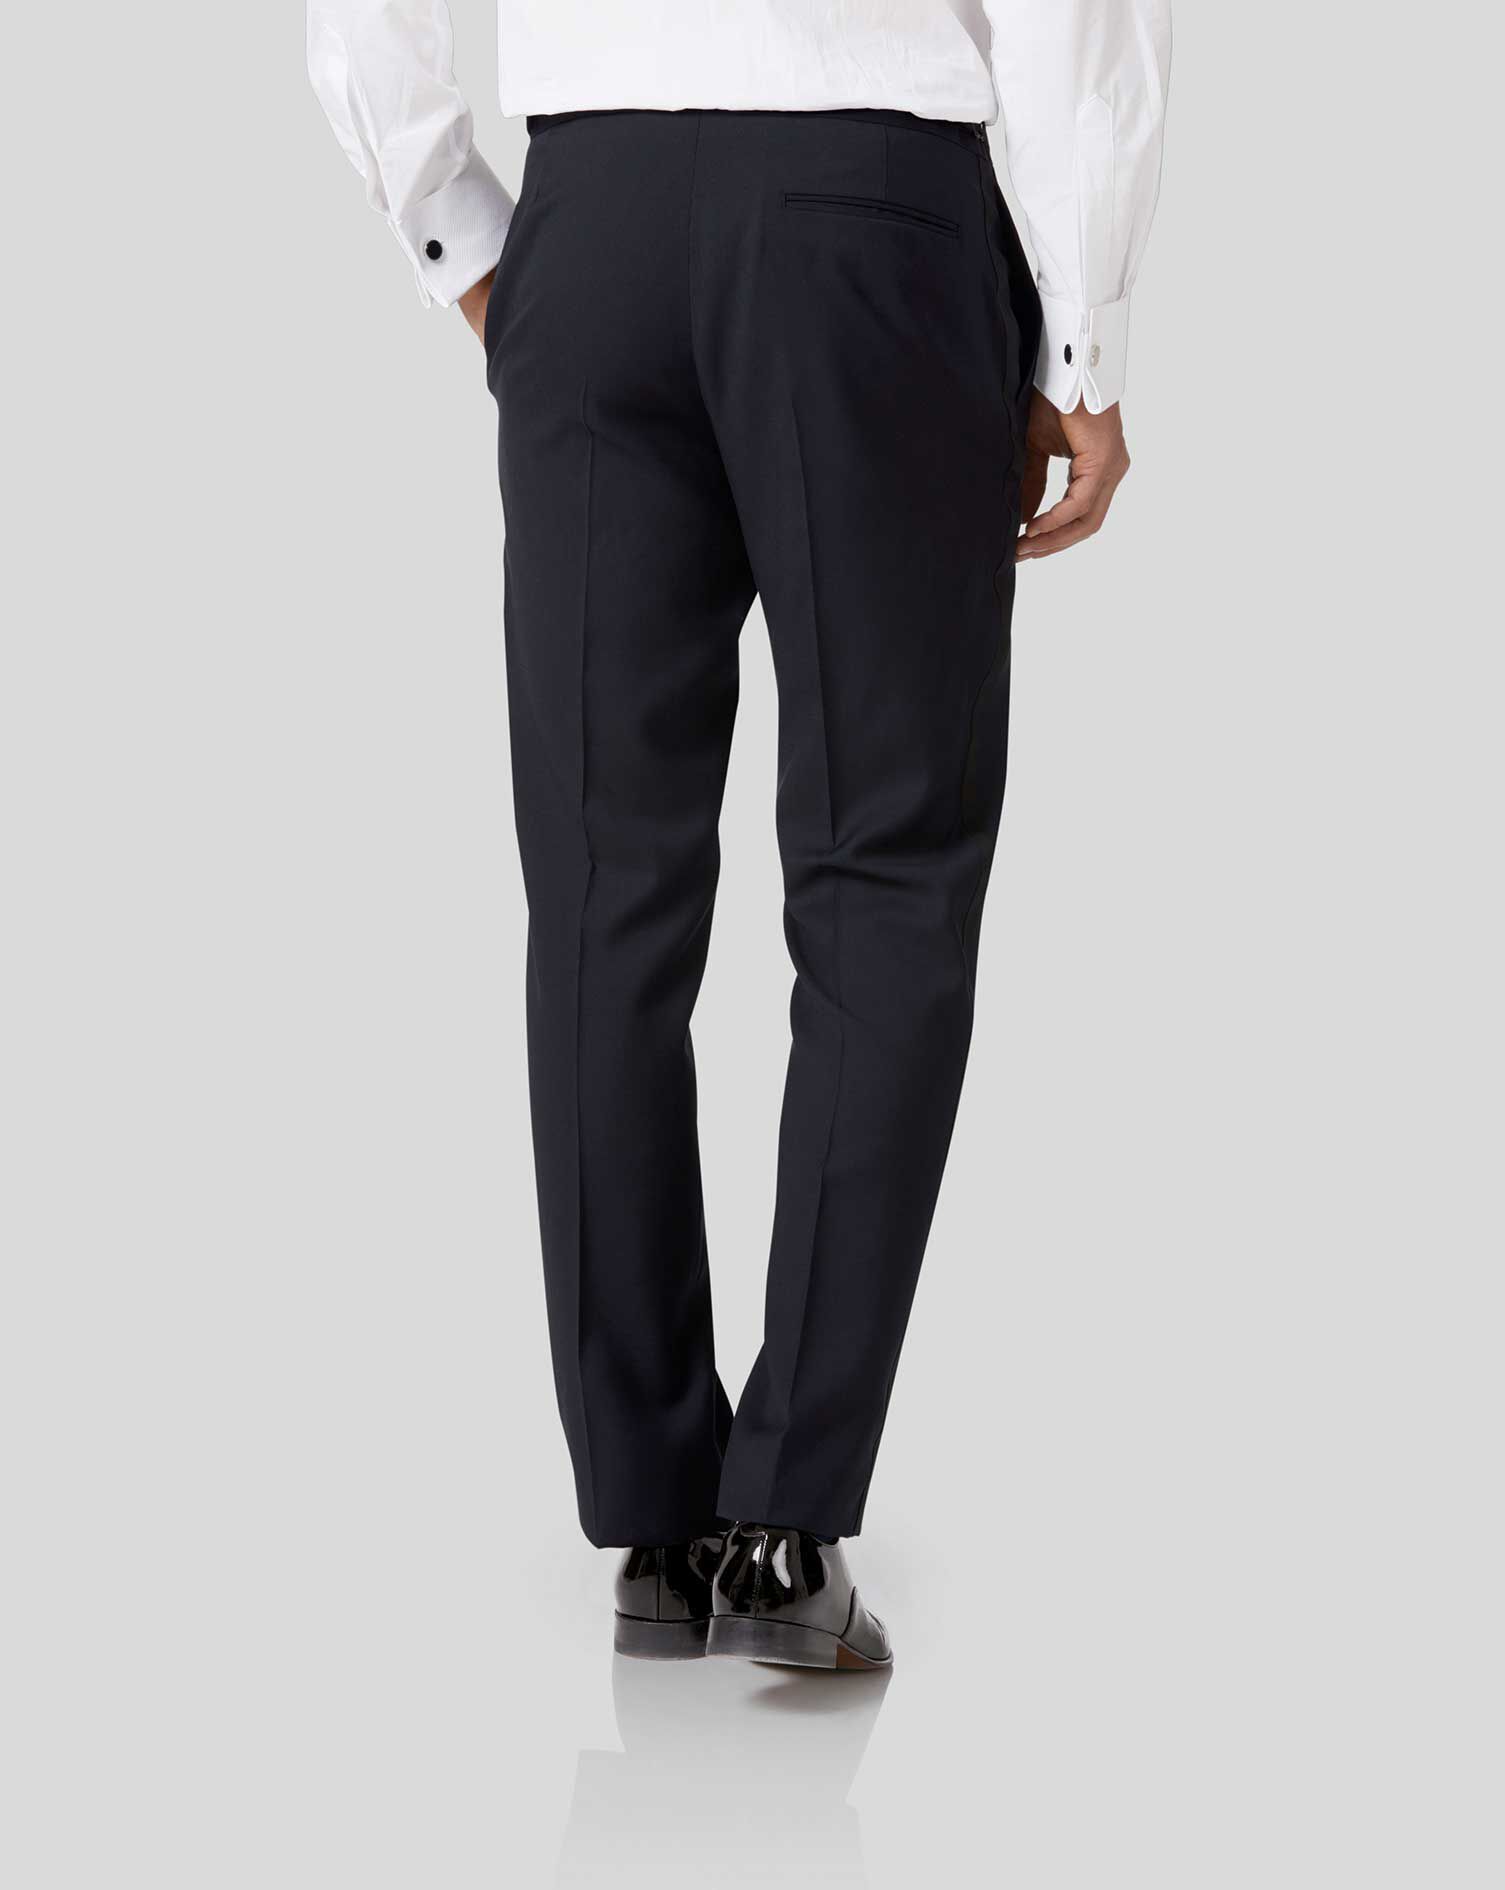 Shop Label M Slim Fit Navy Blue 100% Wool Dress Pants | The Suit Depot